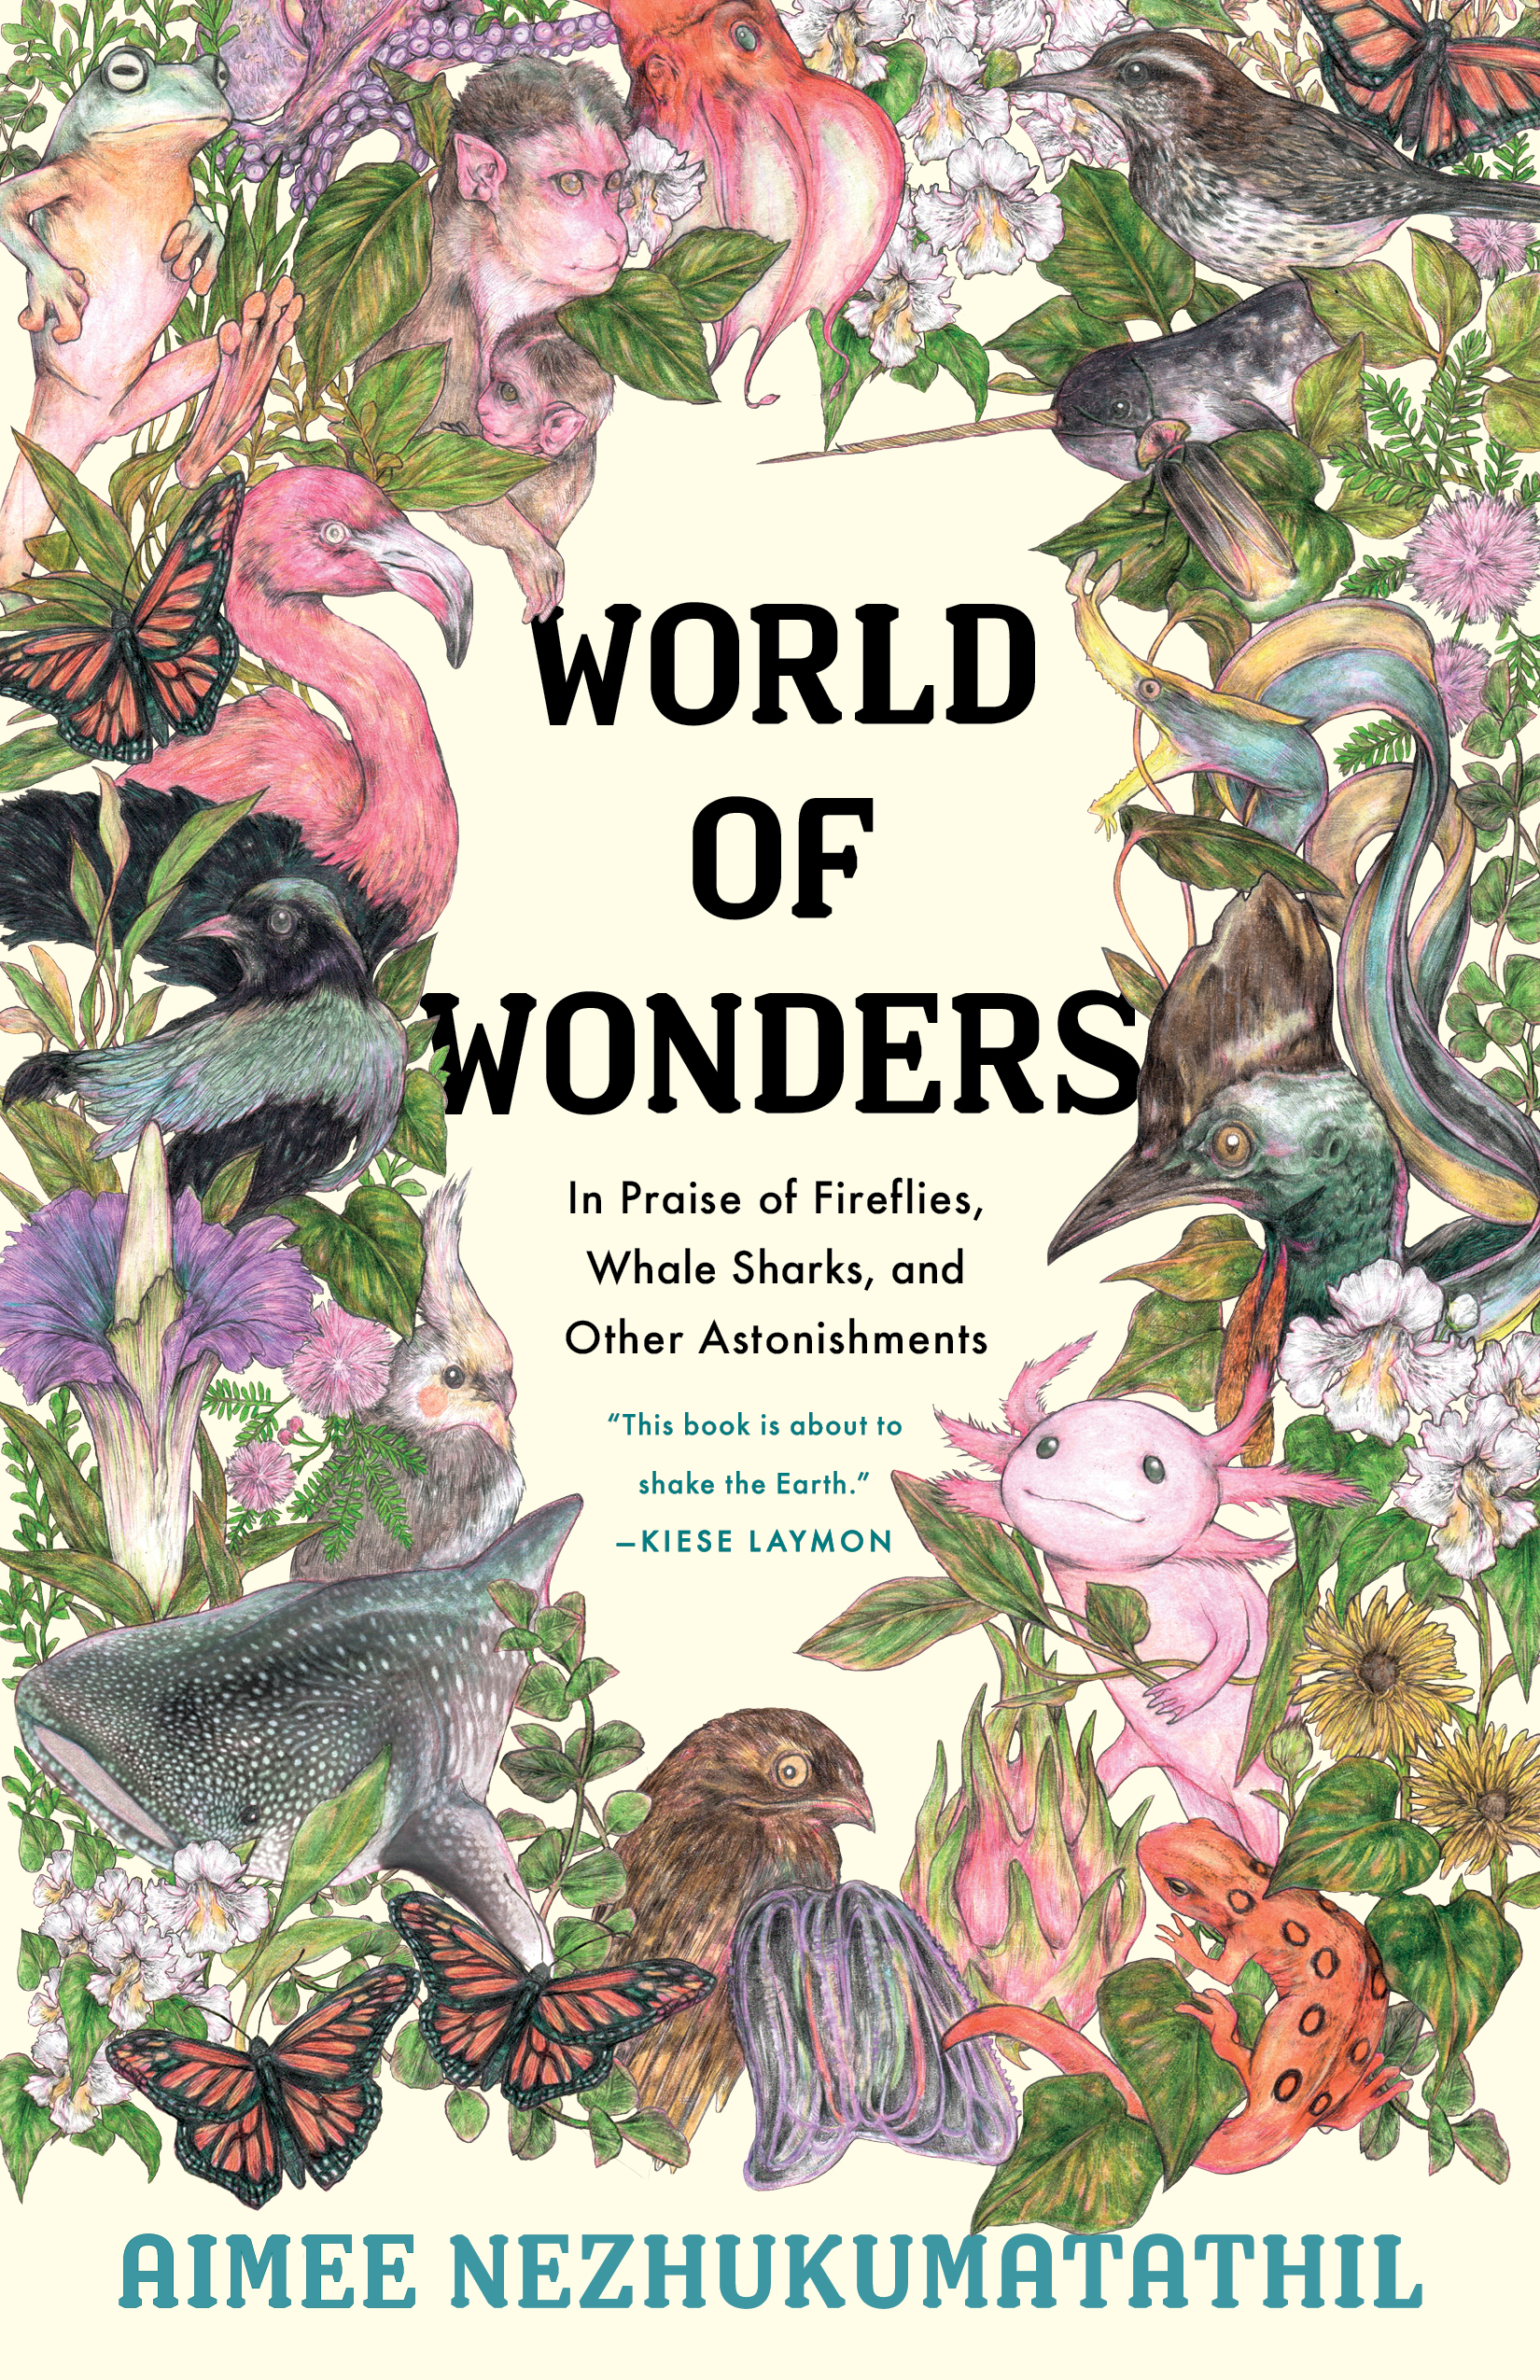 cover of World of Wonders by Aimee Nezhukumatathil